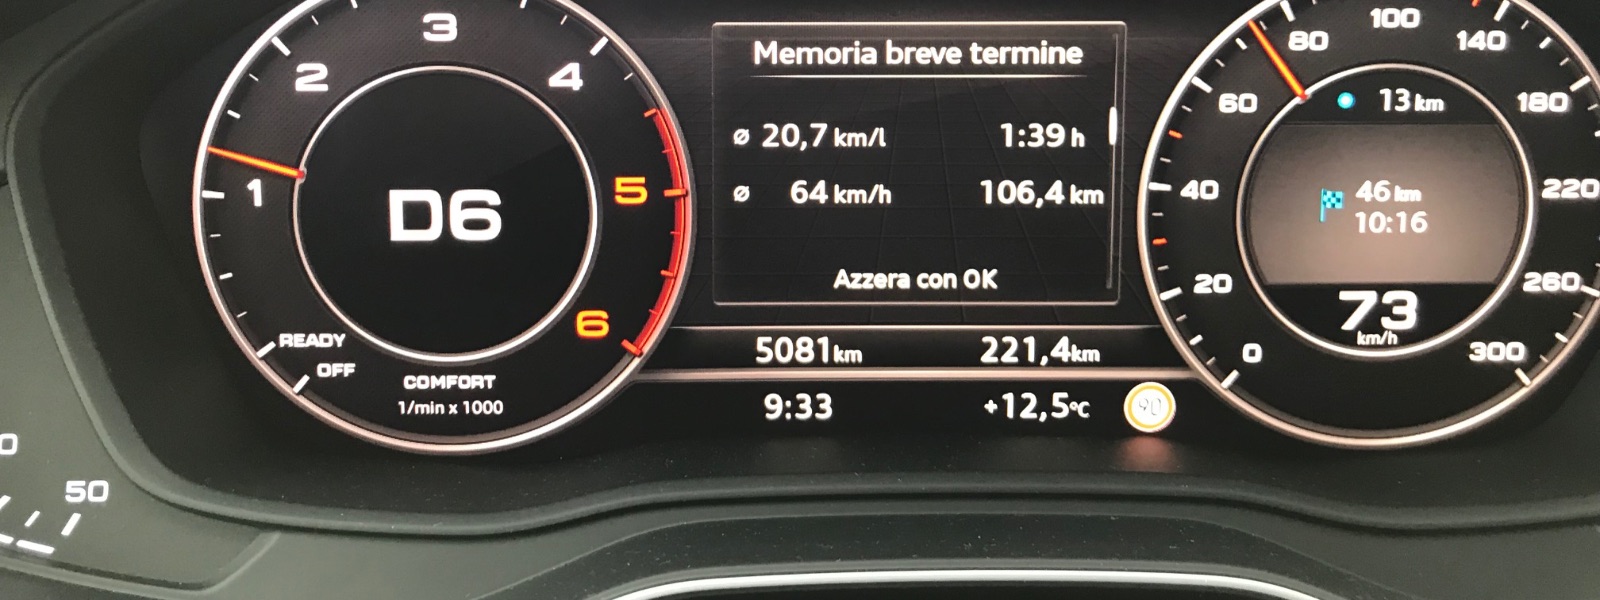 Audi A4 Allroad consumi